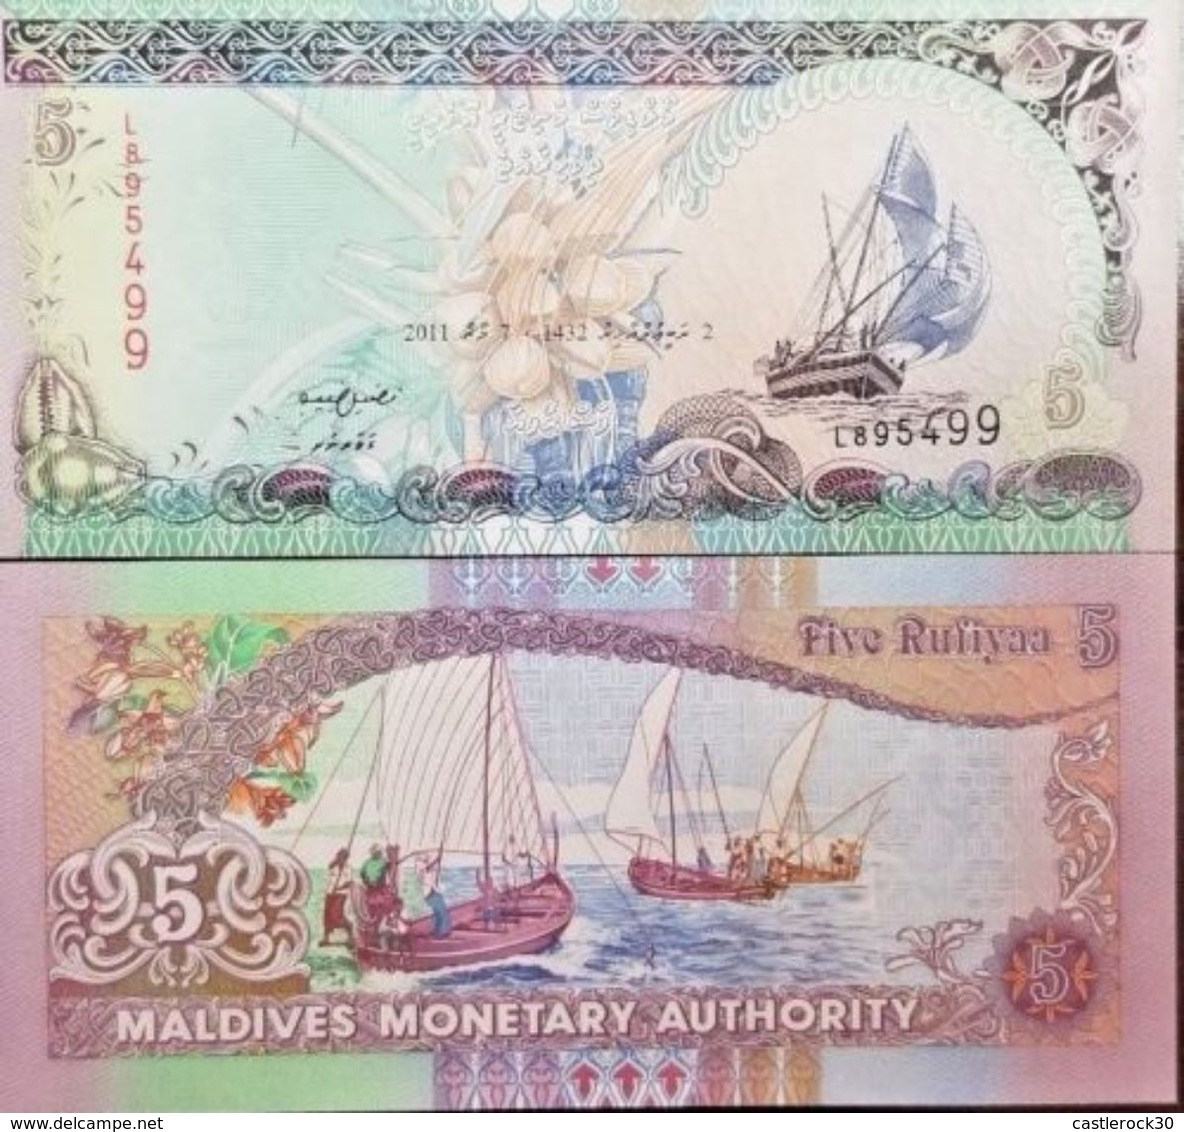 RC) MALDIVES BANK NOTES 5 RUFIYAA UNC ND 1998 - Maldives